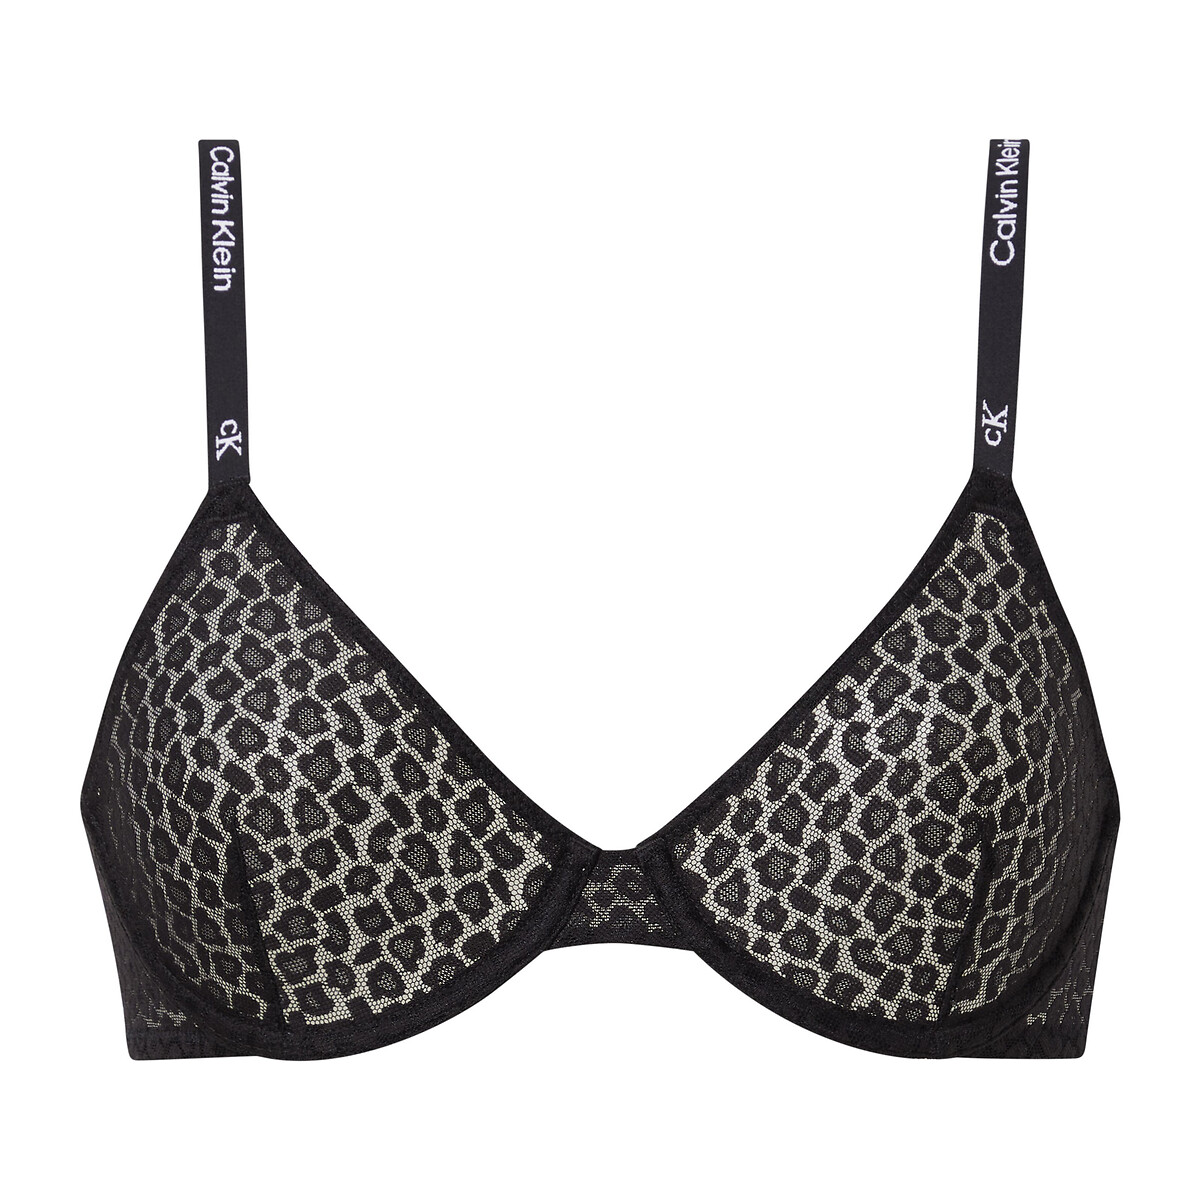 Lace demi-cup bra in animal print, black, Calvin Klein Underwear